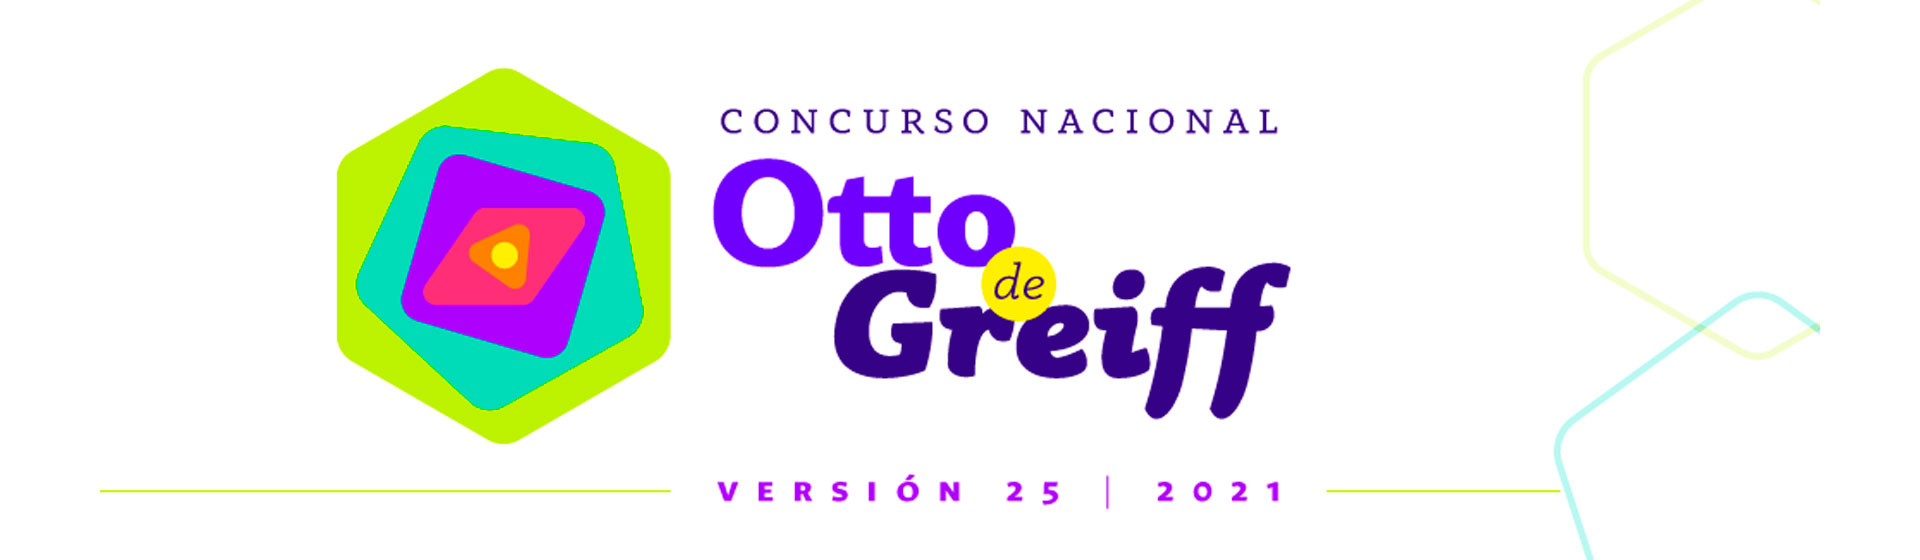 Logo Concurso Nacional Otto de Greiff 2021